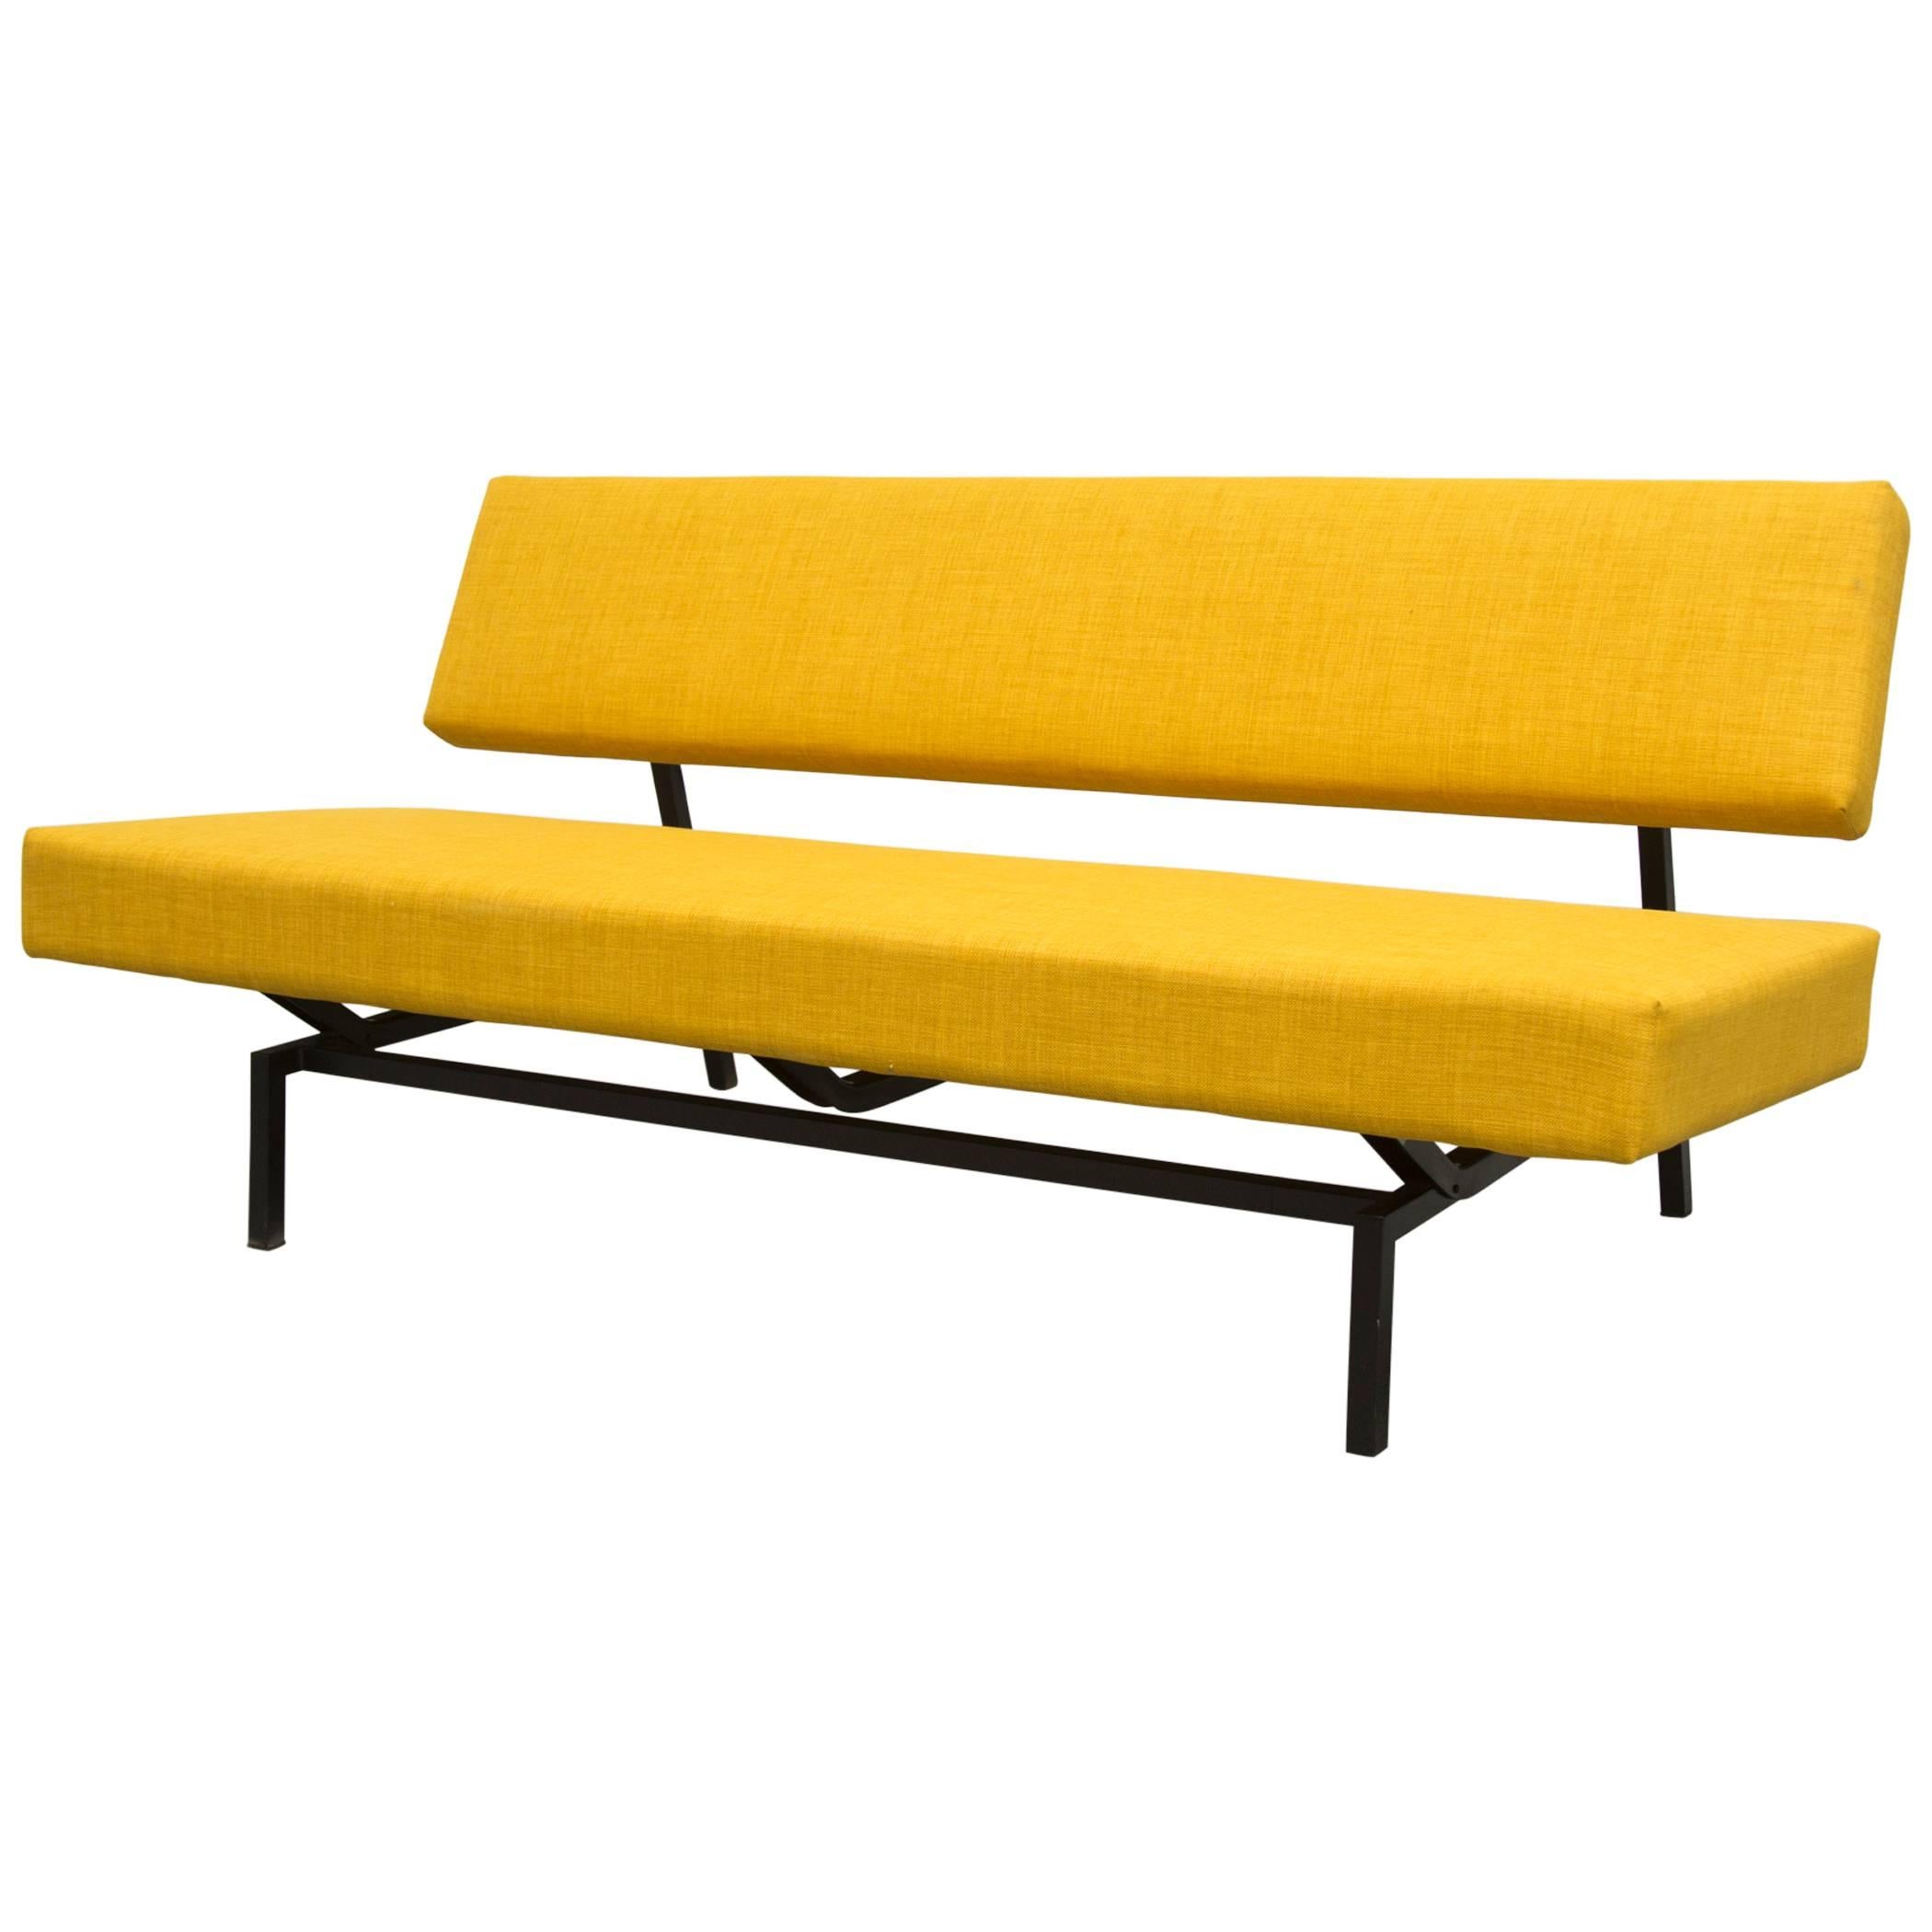 Martin Visser Style Sofa for 't Spectrum in Sunshine Yellow